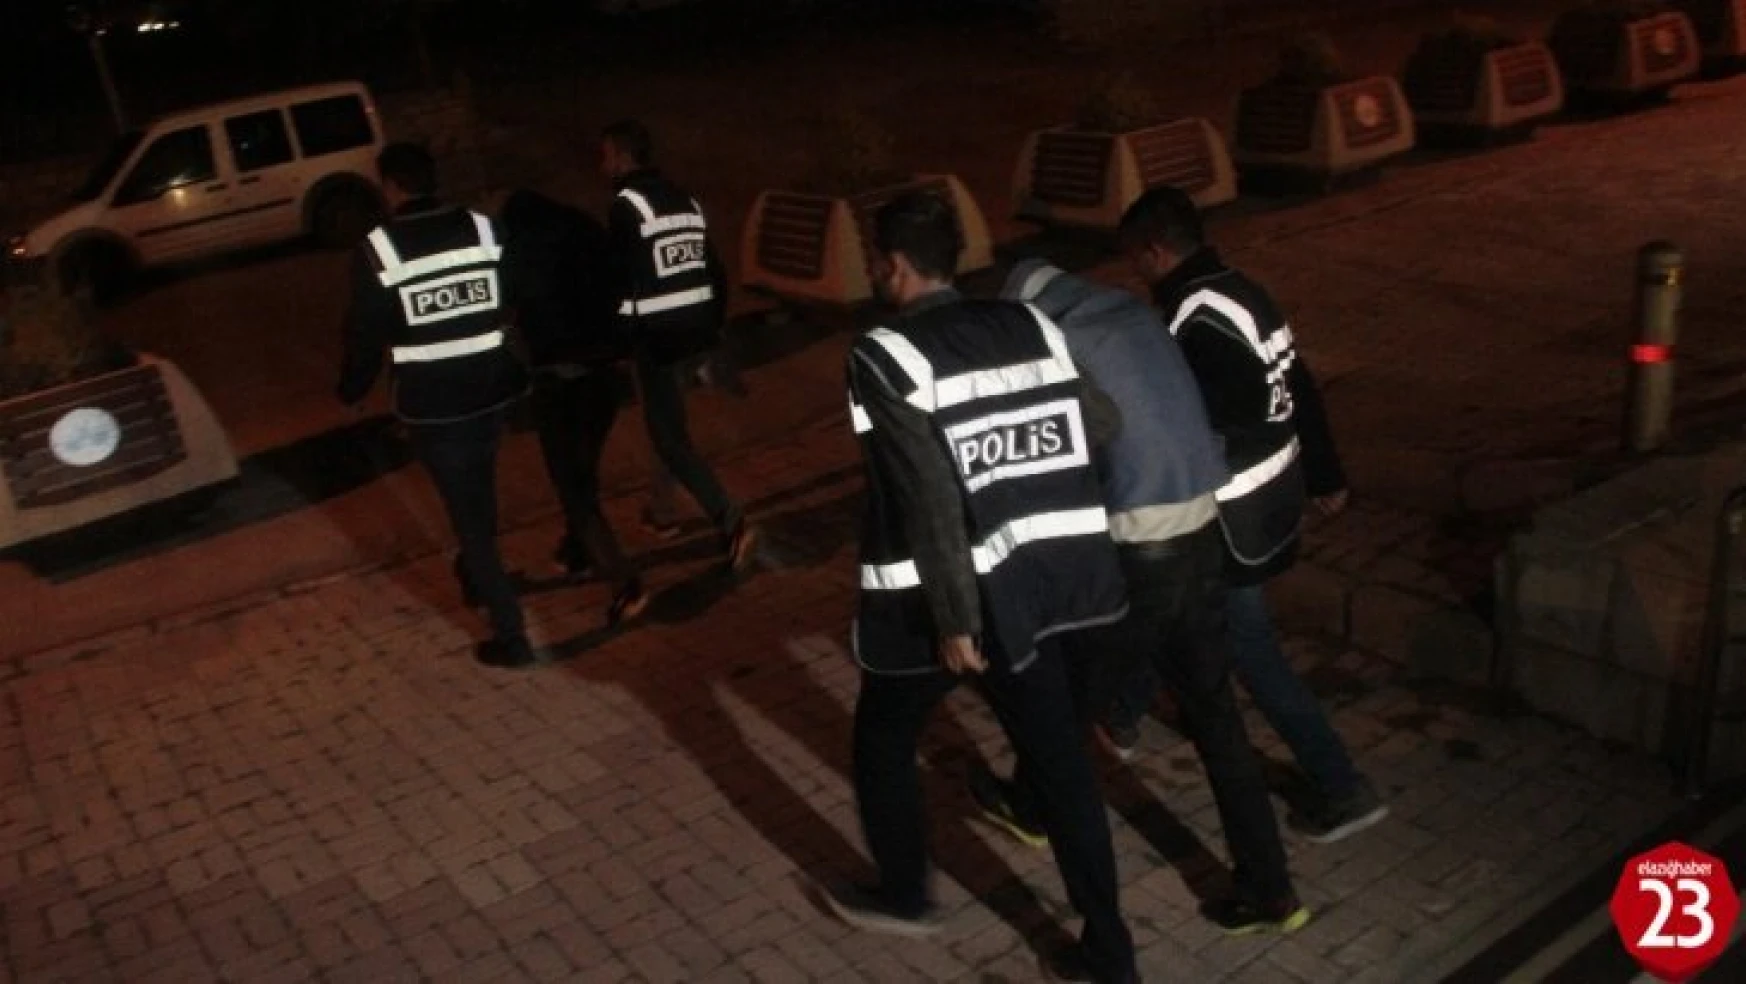 Elazığ'da 5 Ayrı Hırsızlığa Karışan 3 Şüpheli Tutuklandı